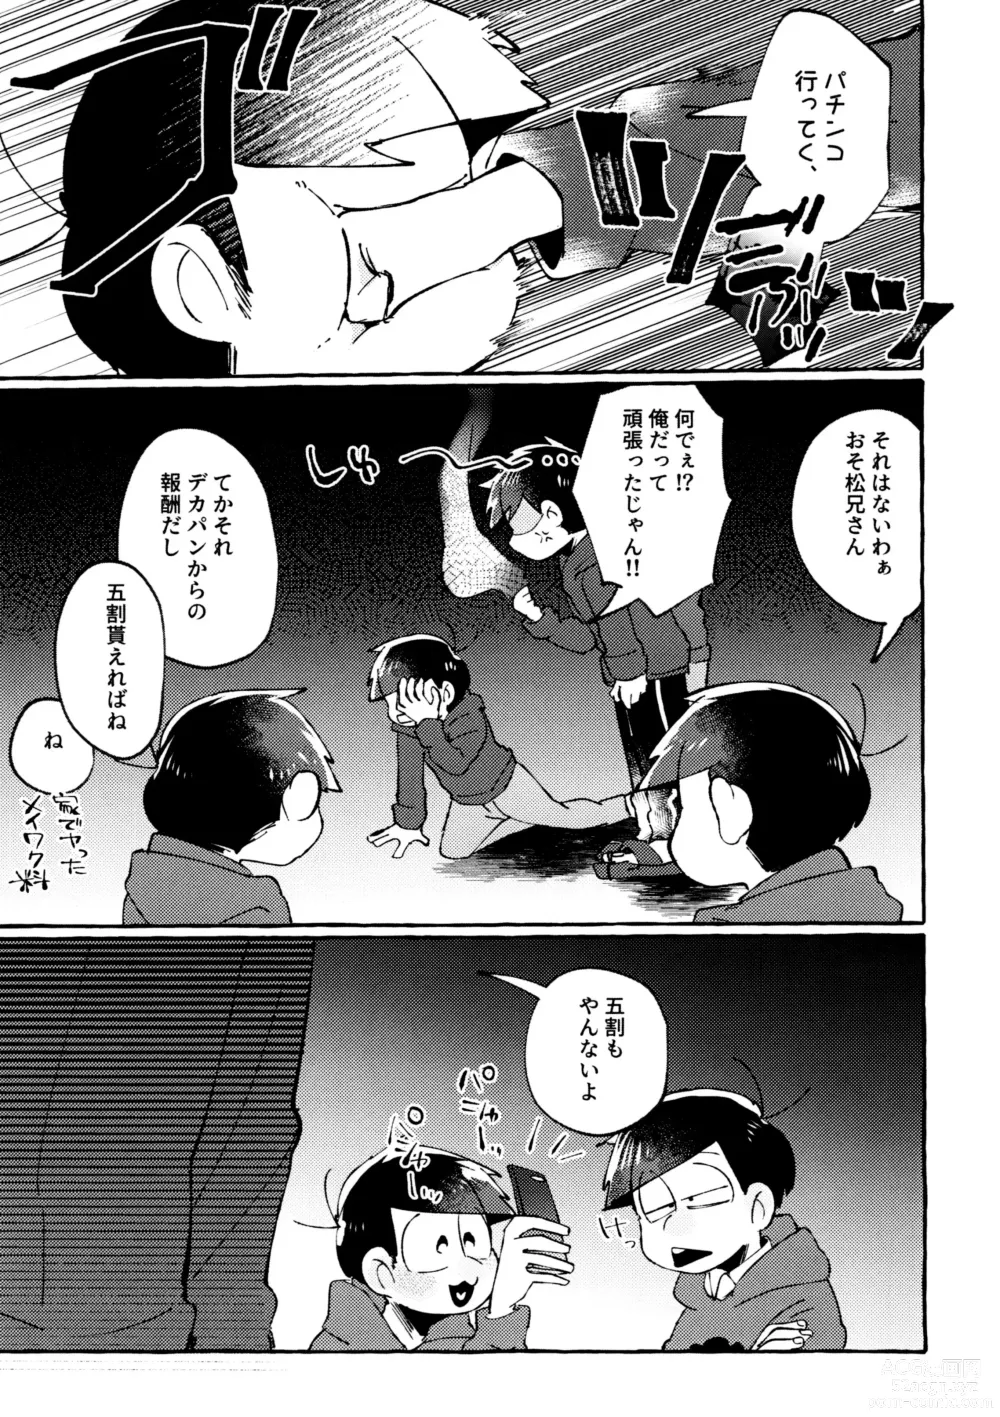 Page 37 of doujinshi sekai o sukueru no wa ore-tachi no ×××!